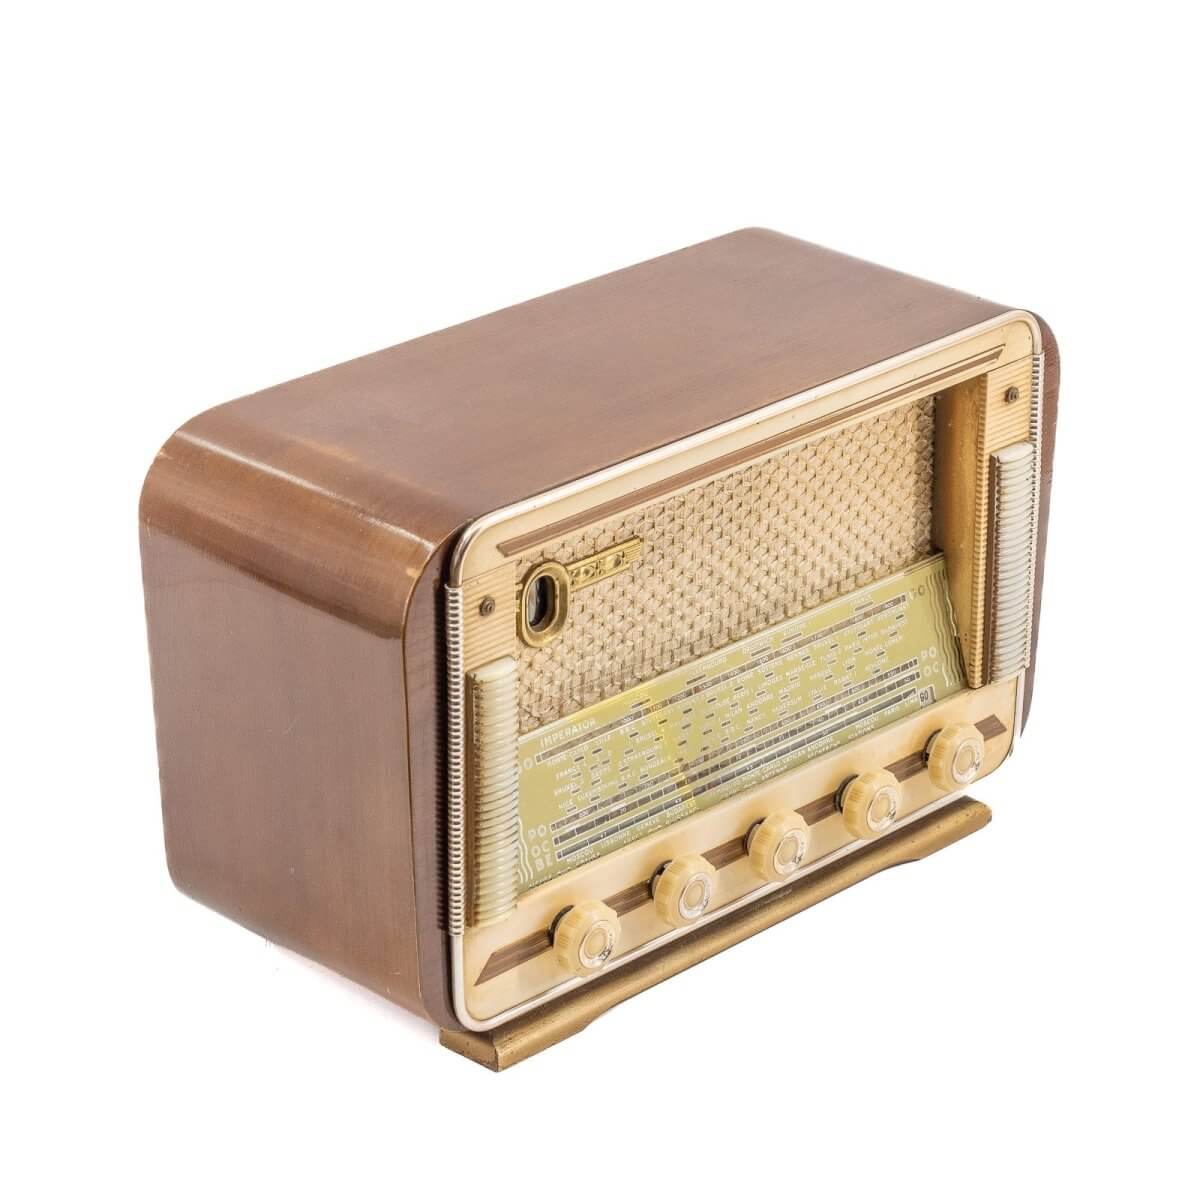 Radio Bluetooth Imperator Vintage 50’S-A.bsolument-enceintes-et-radios-vintage-bluetooth